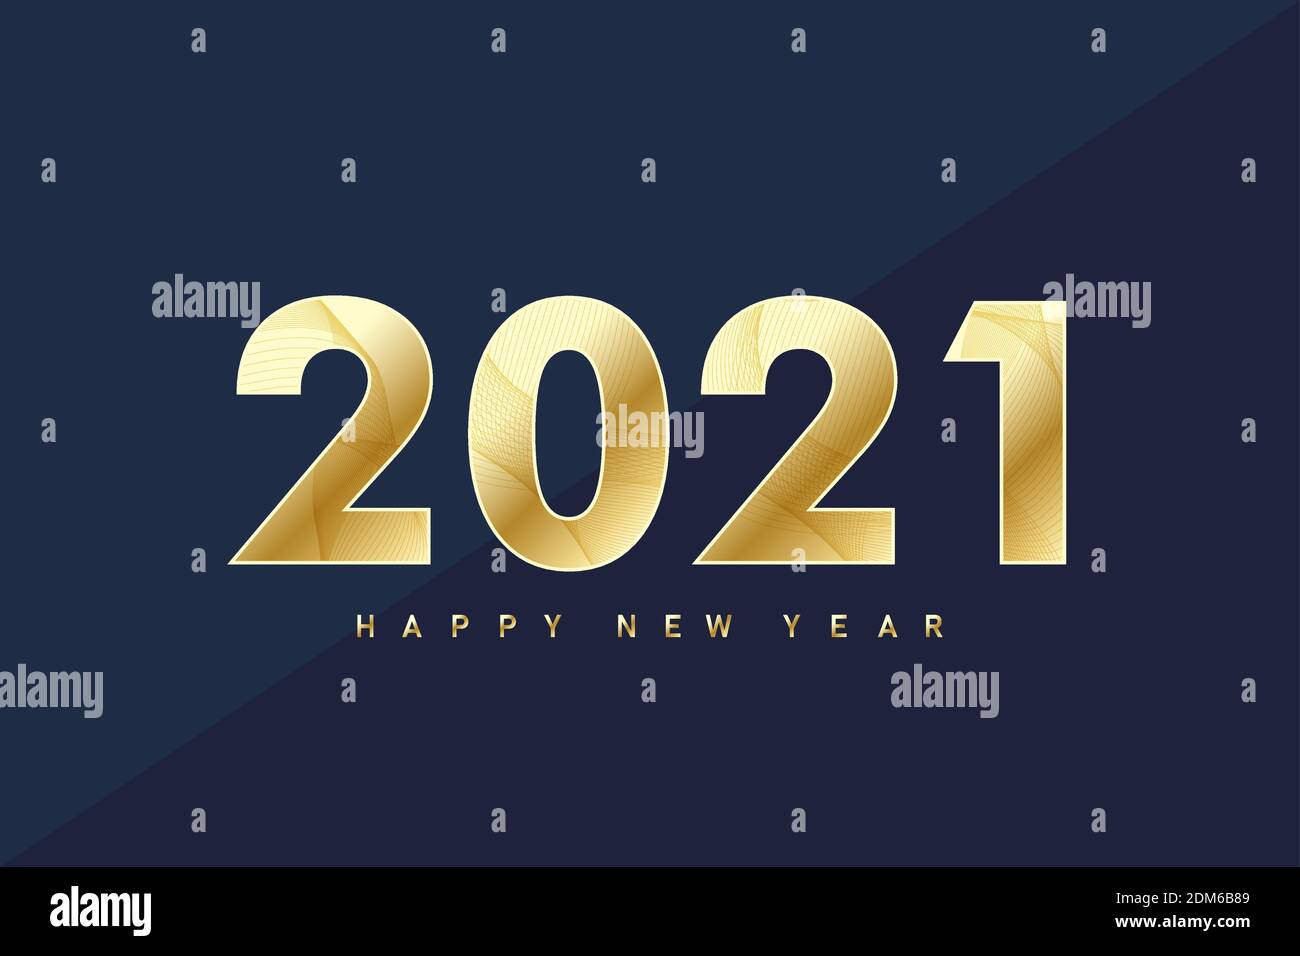 2021 Frohes neues Jahr. Frohe Weihnachten und ein glückliches neues Jahr 2021 Grußkarte. Feiern Sie Party Vorlage für 2021. Vektorgrafik. Stock Vektor